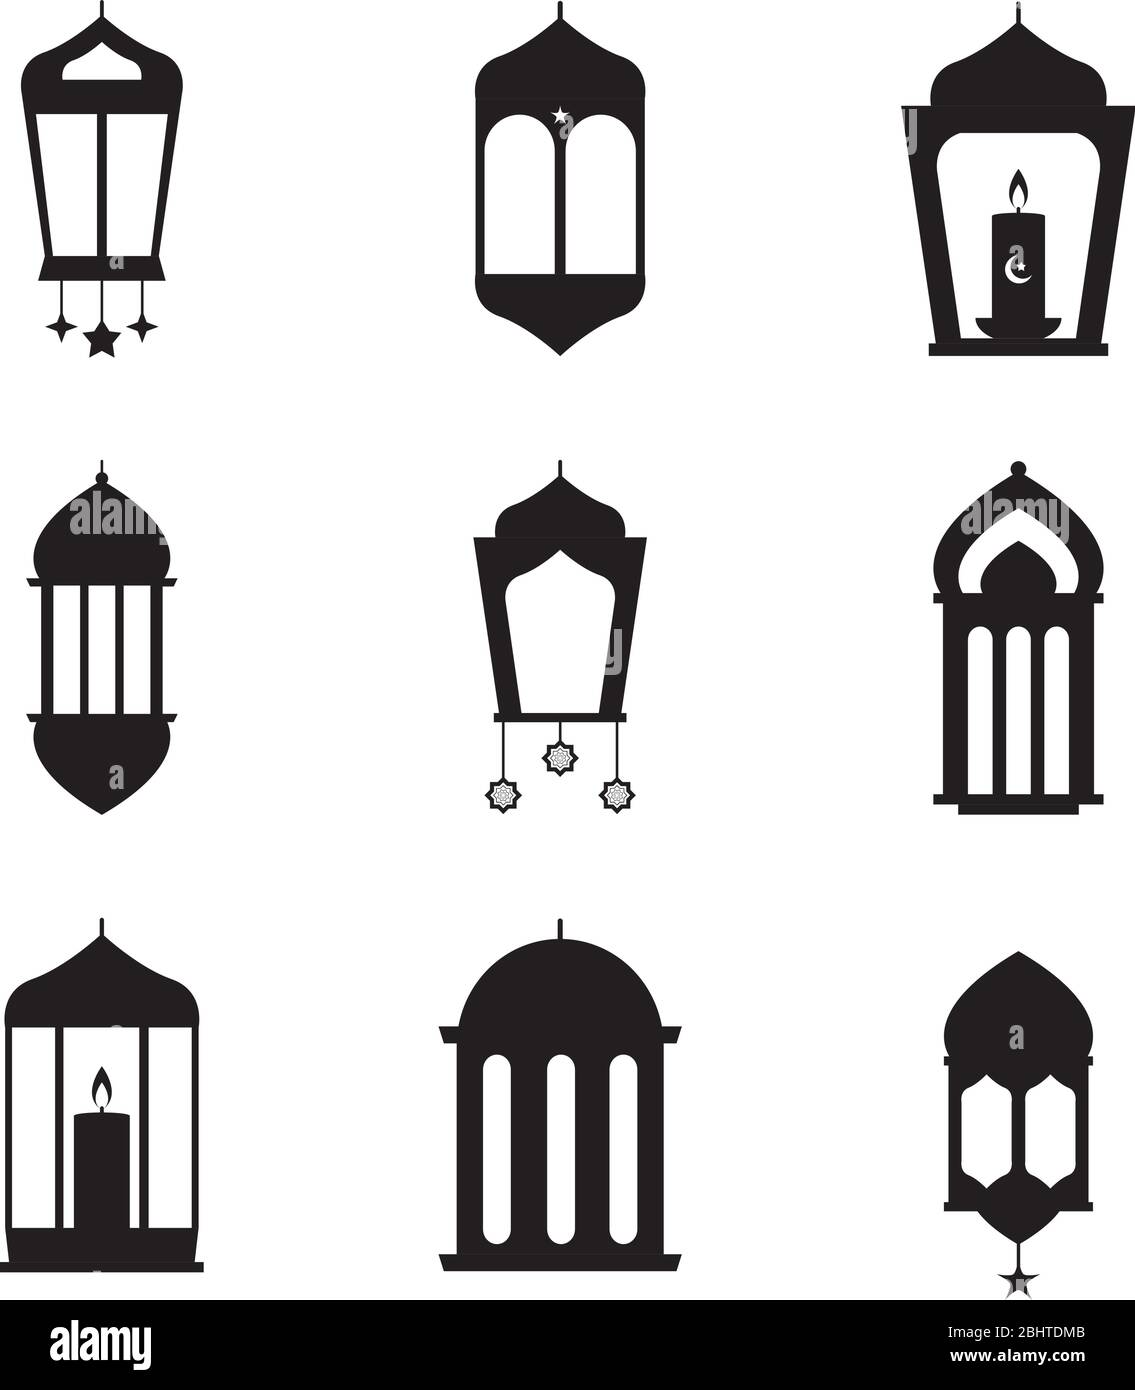 Eid lantern Imágenes vectoriales de stock - Página 2 - Alamy